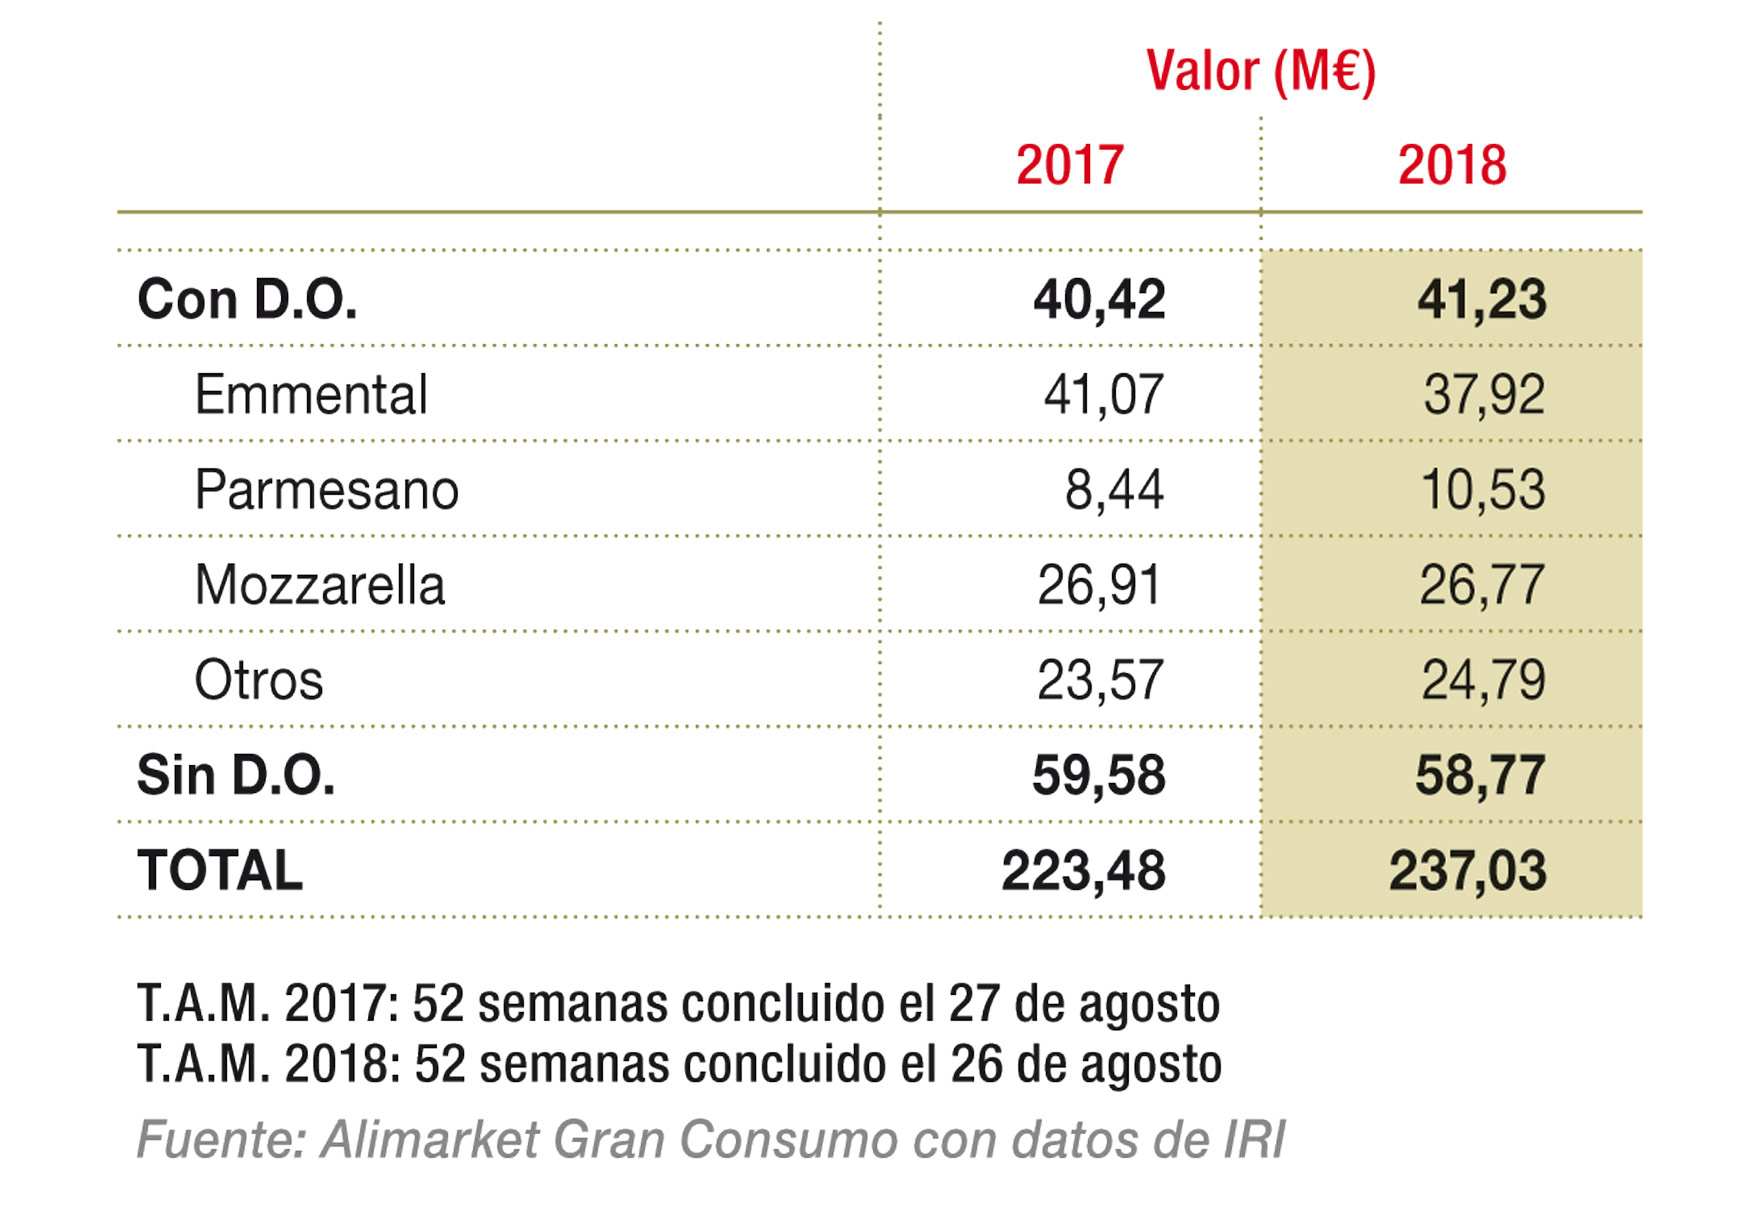 Segmentación del mercado de quesos rallados en libreservicio (%) 